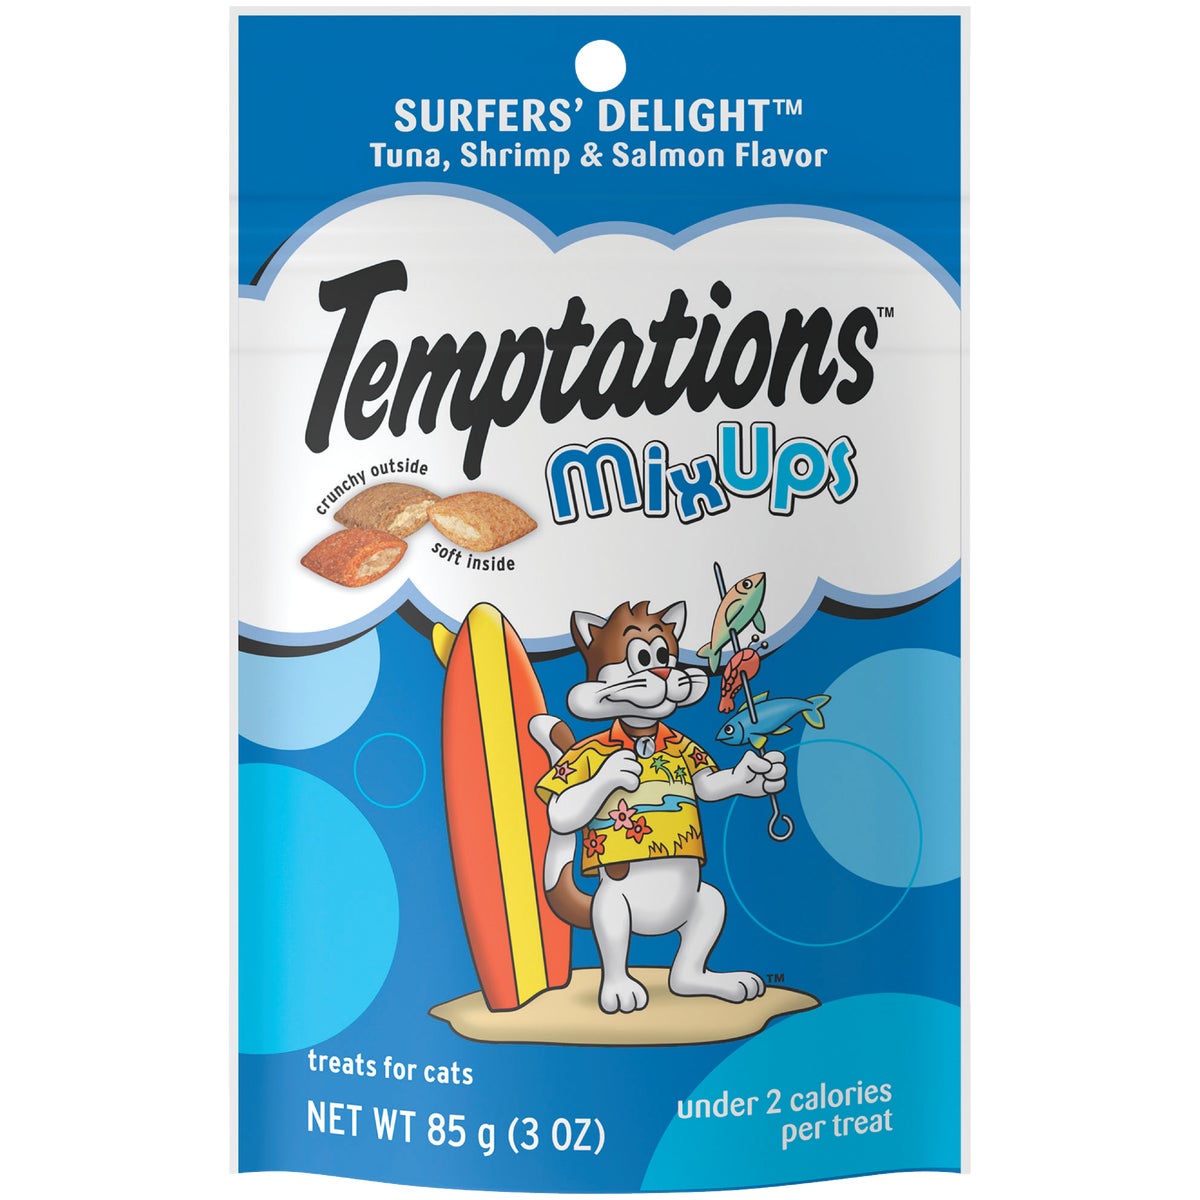 Temptations Mix Ups Surfers' Delight 3 Oz. Cat Treats